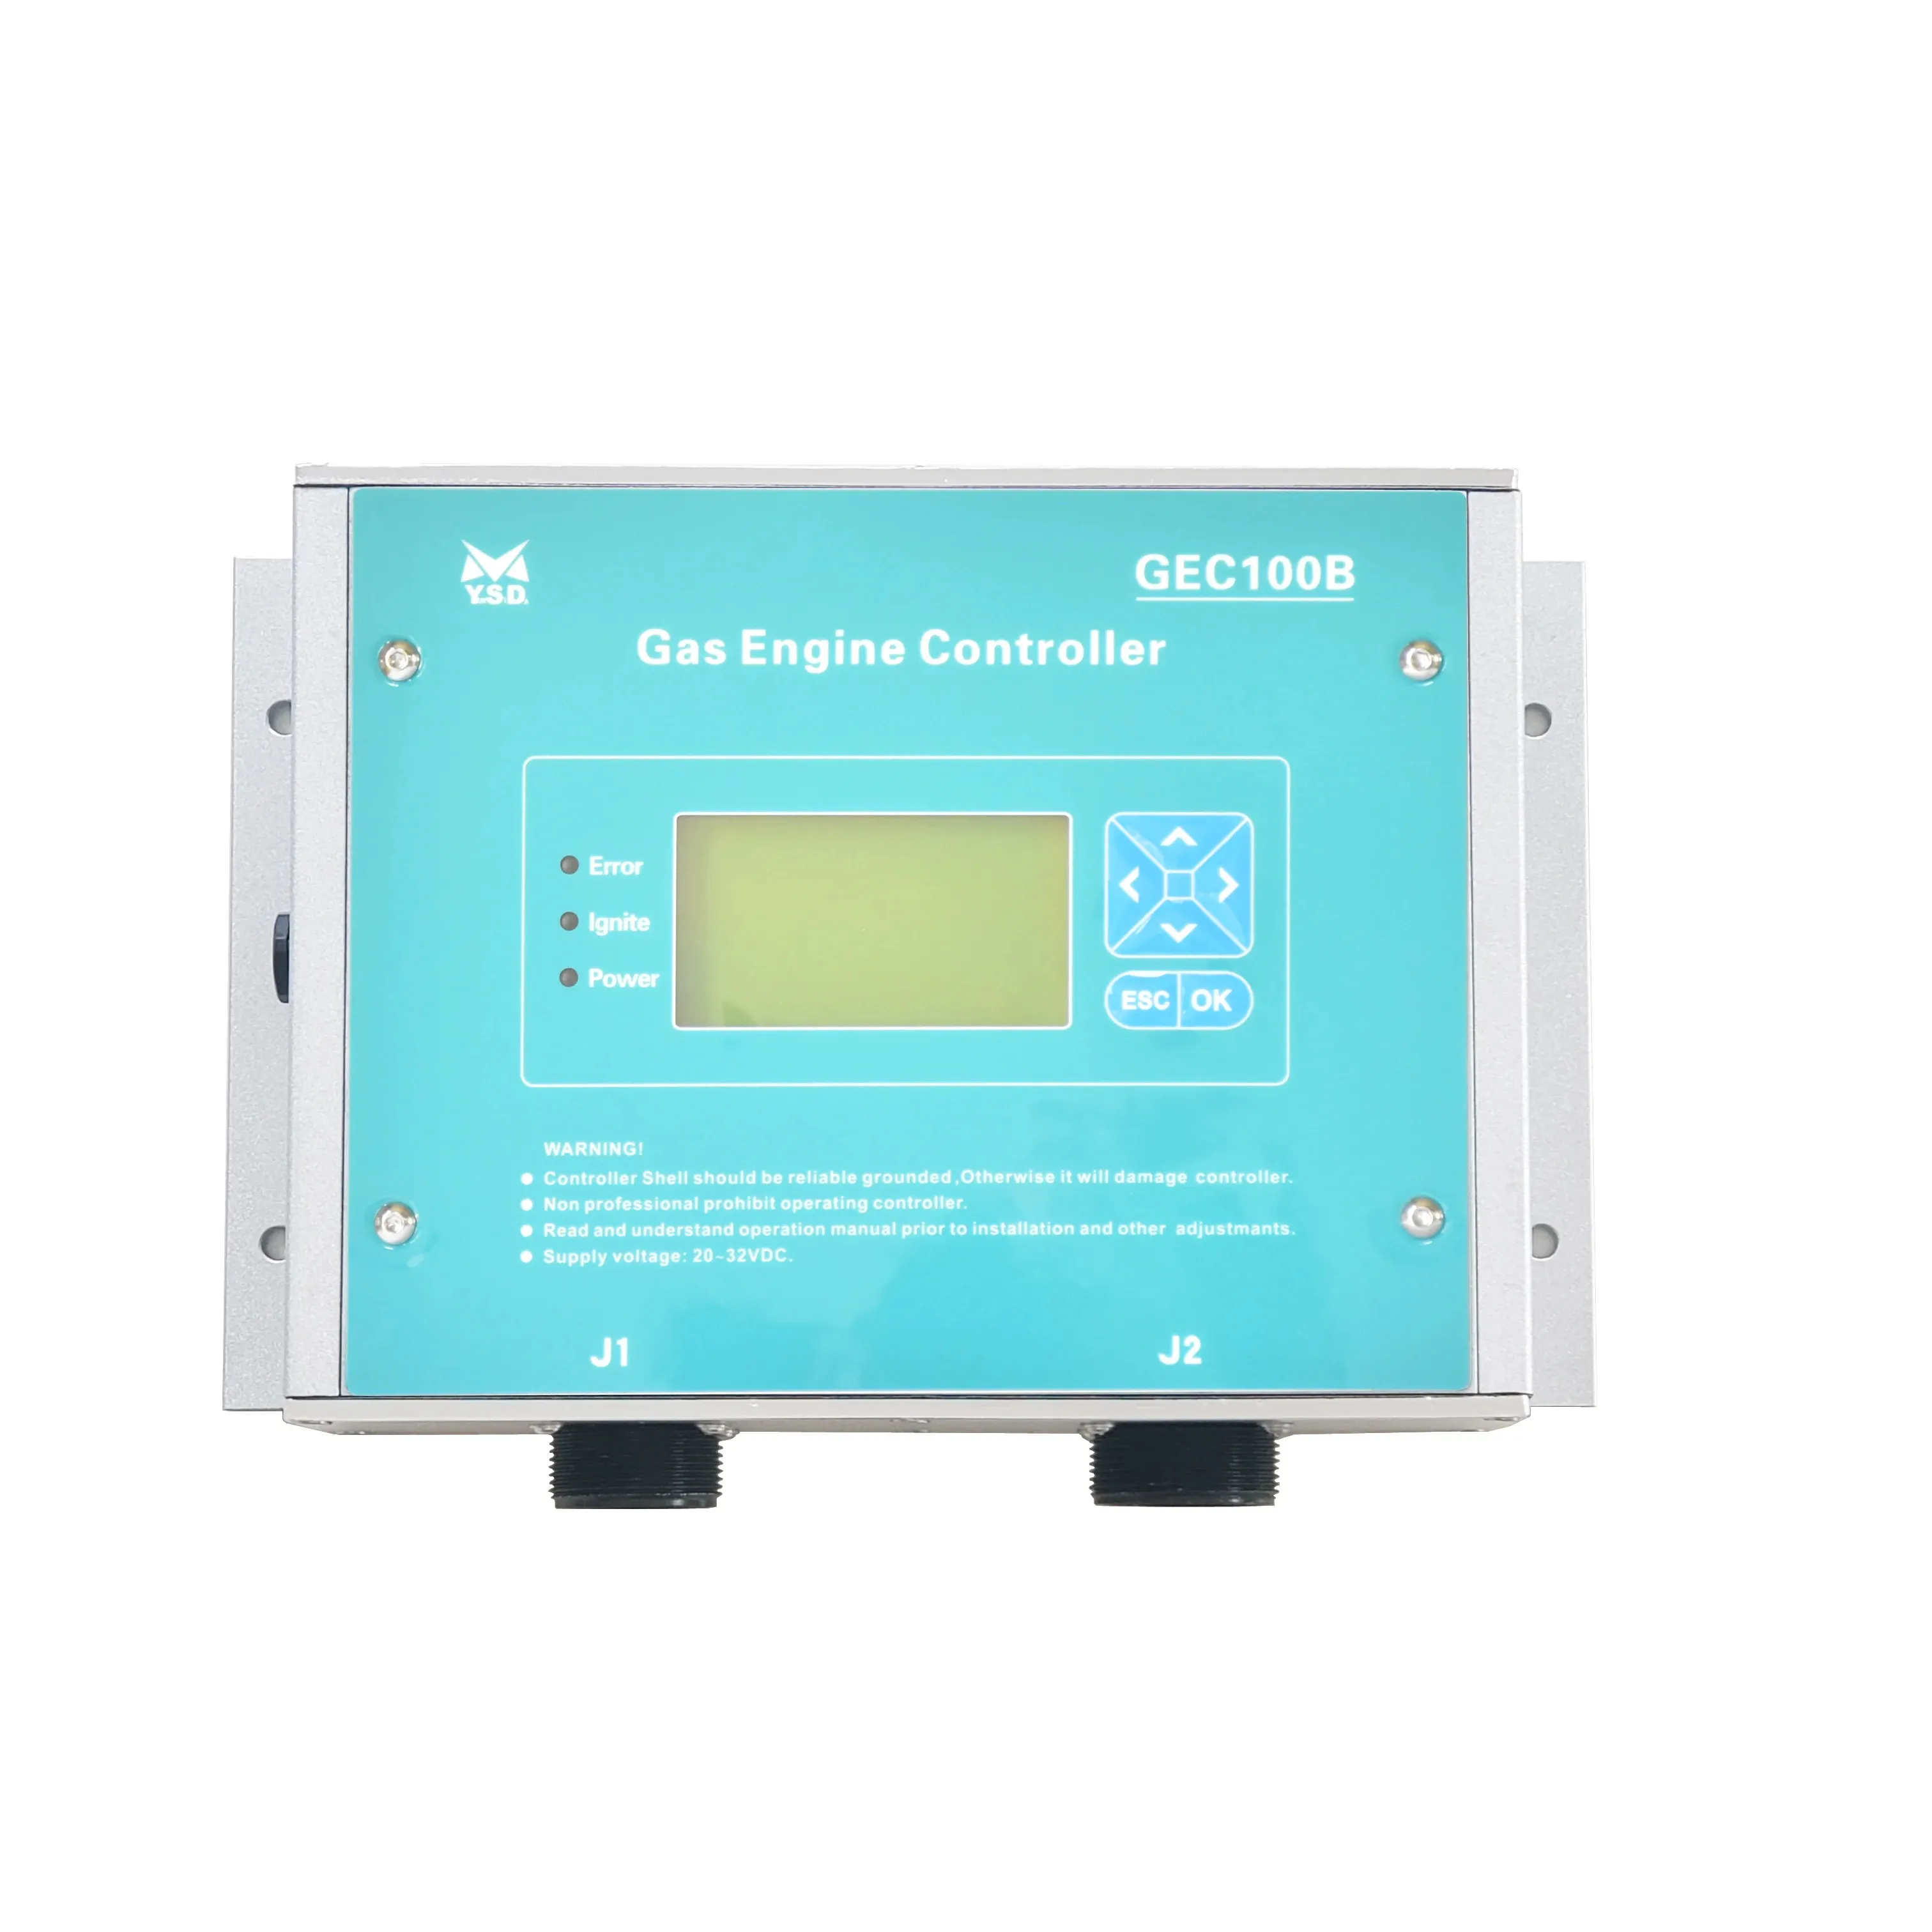 Regolatore di accensione del generatore di gas naturale Motortech MIC3 MIC4 altonico NGI-1000 Heinzmann Digital control woodward GEC100